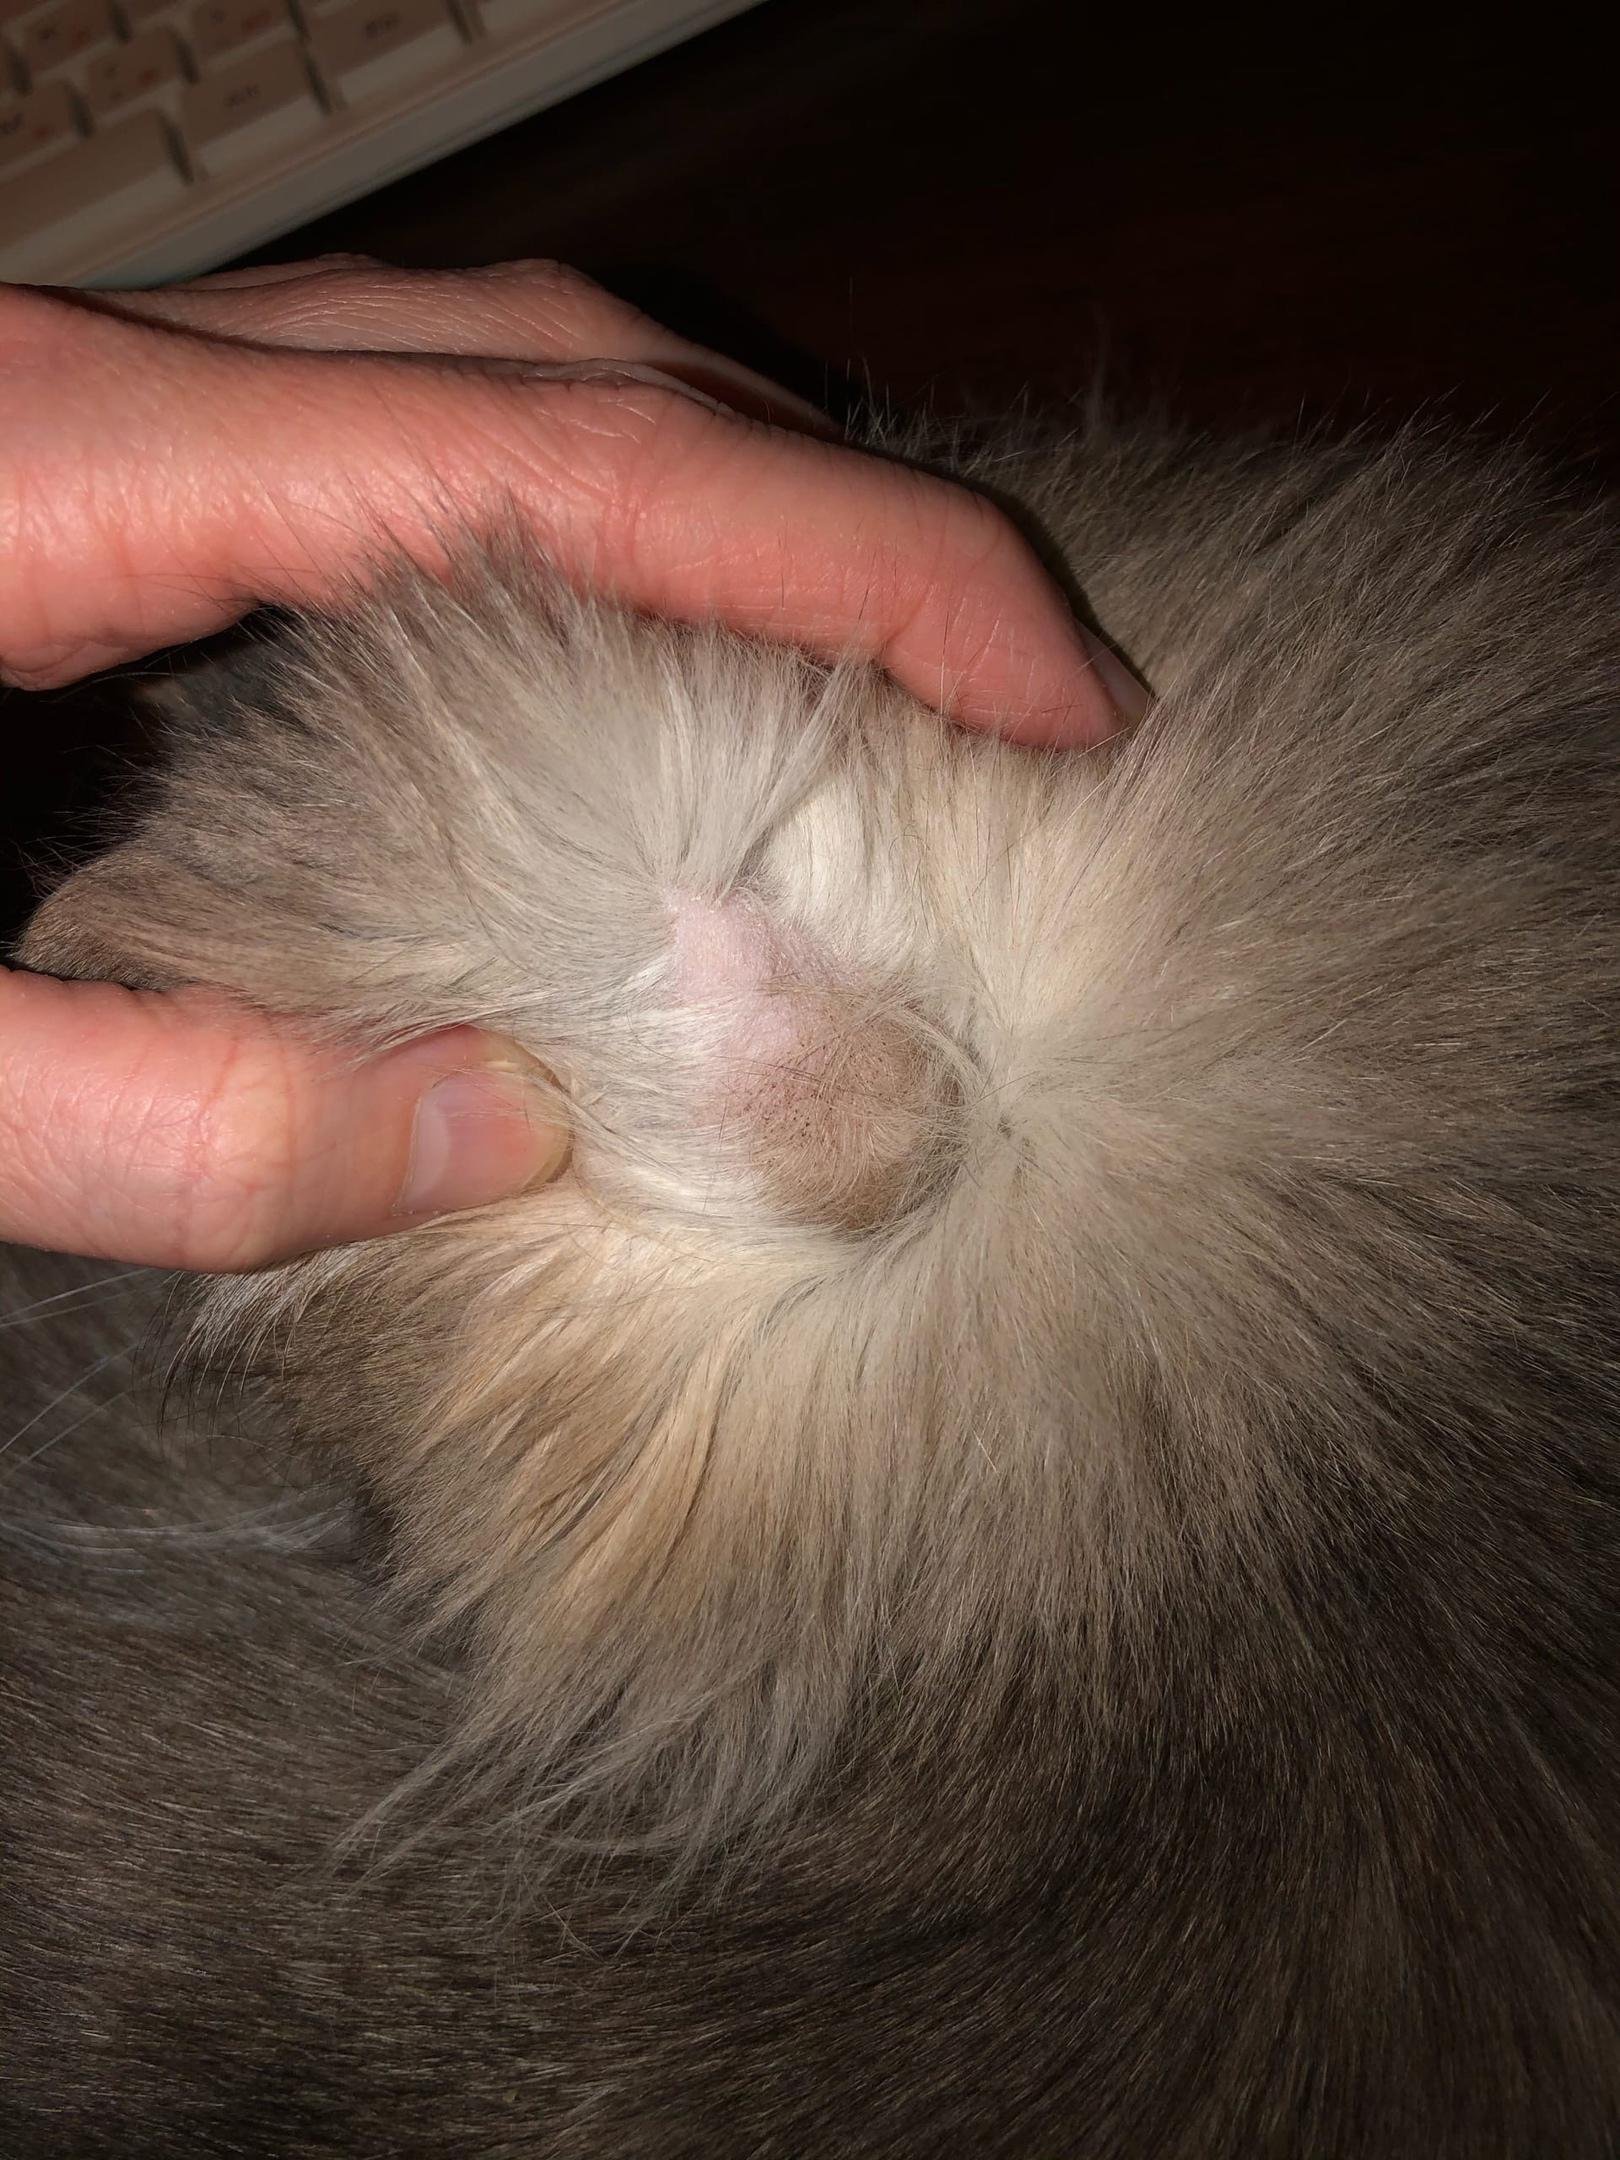 Залысины на голове у кота